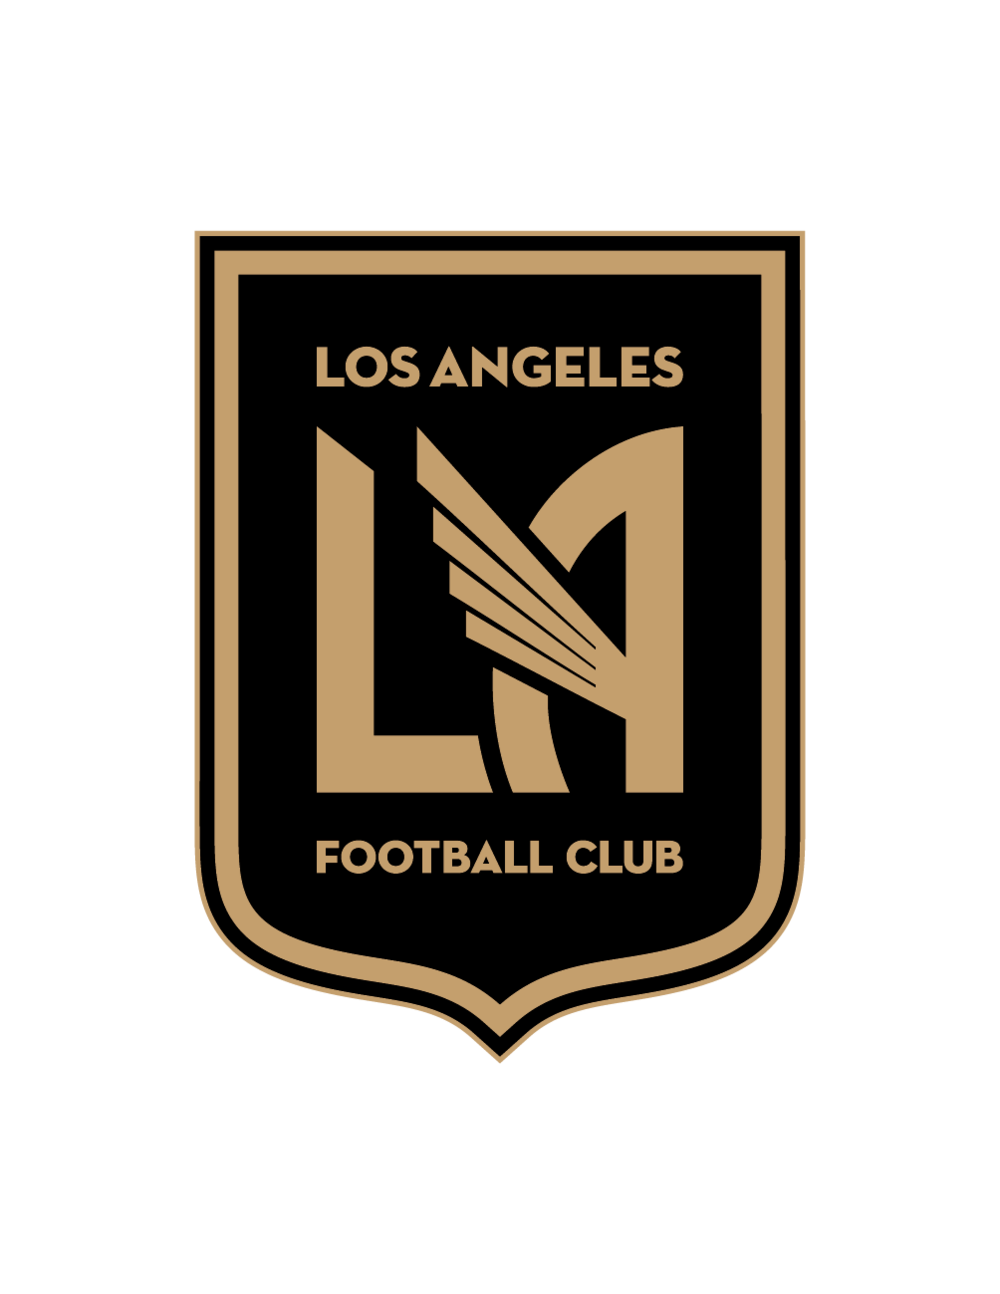 LA Football Club